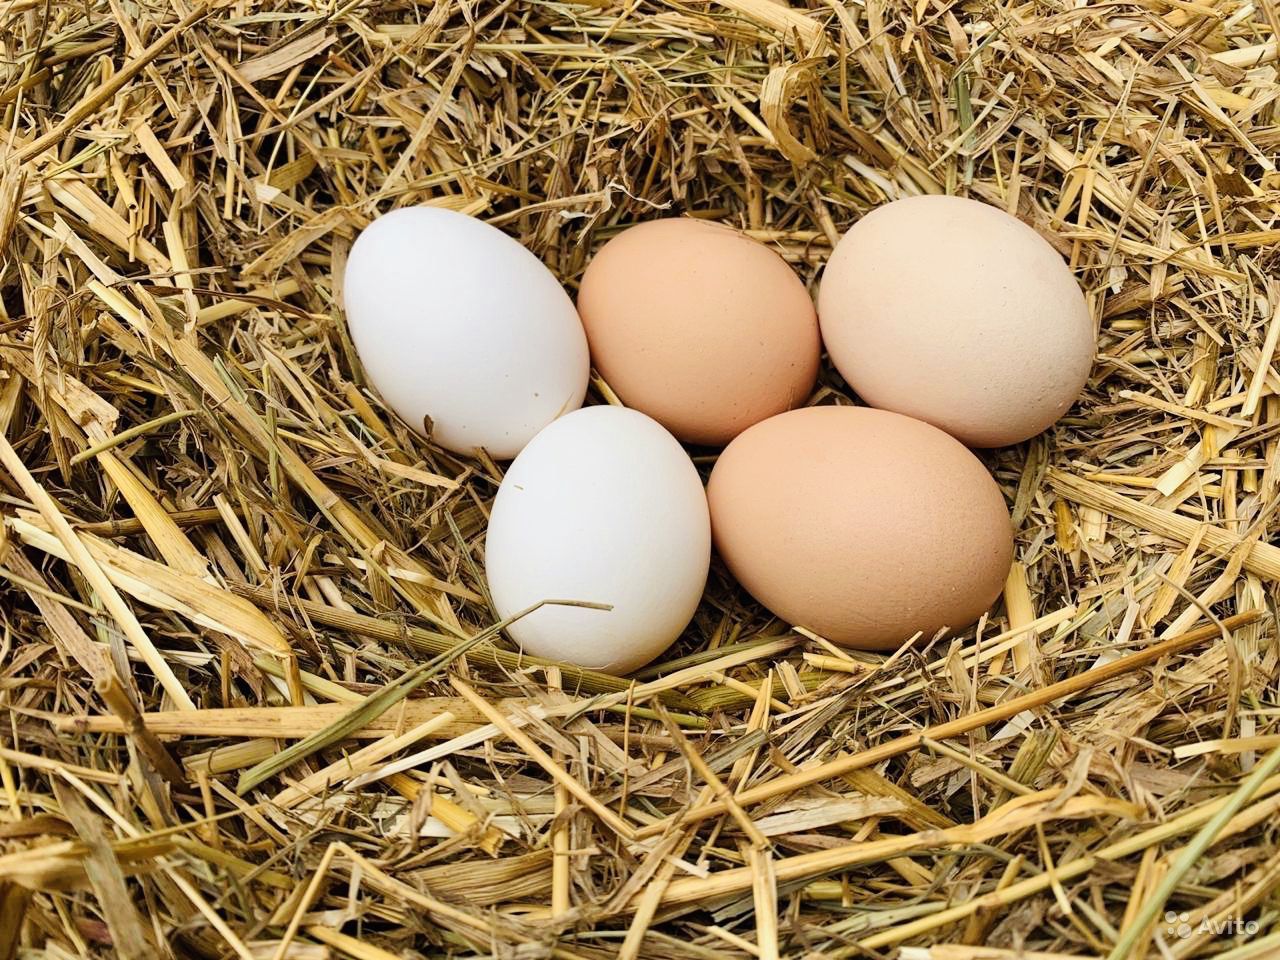 150 миллионов штук яиц произведено в сельхозорганизациях Смоленской области  